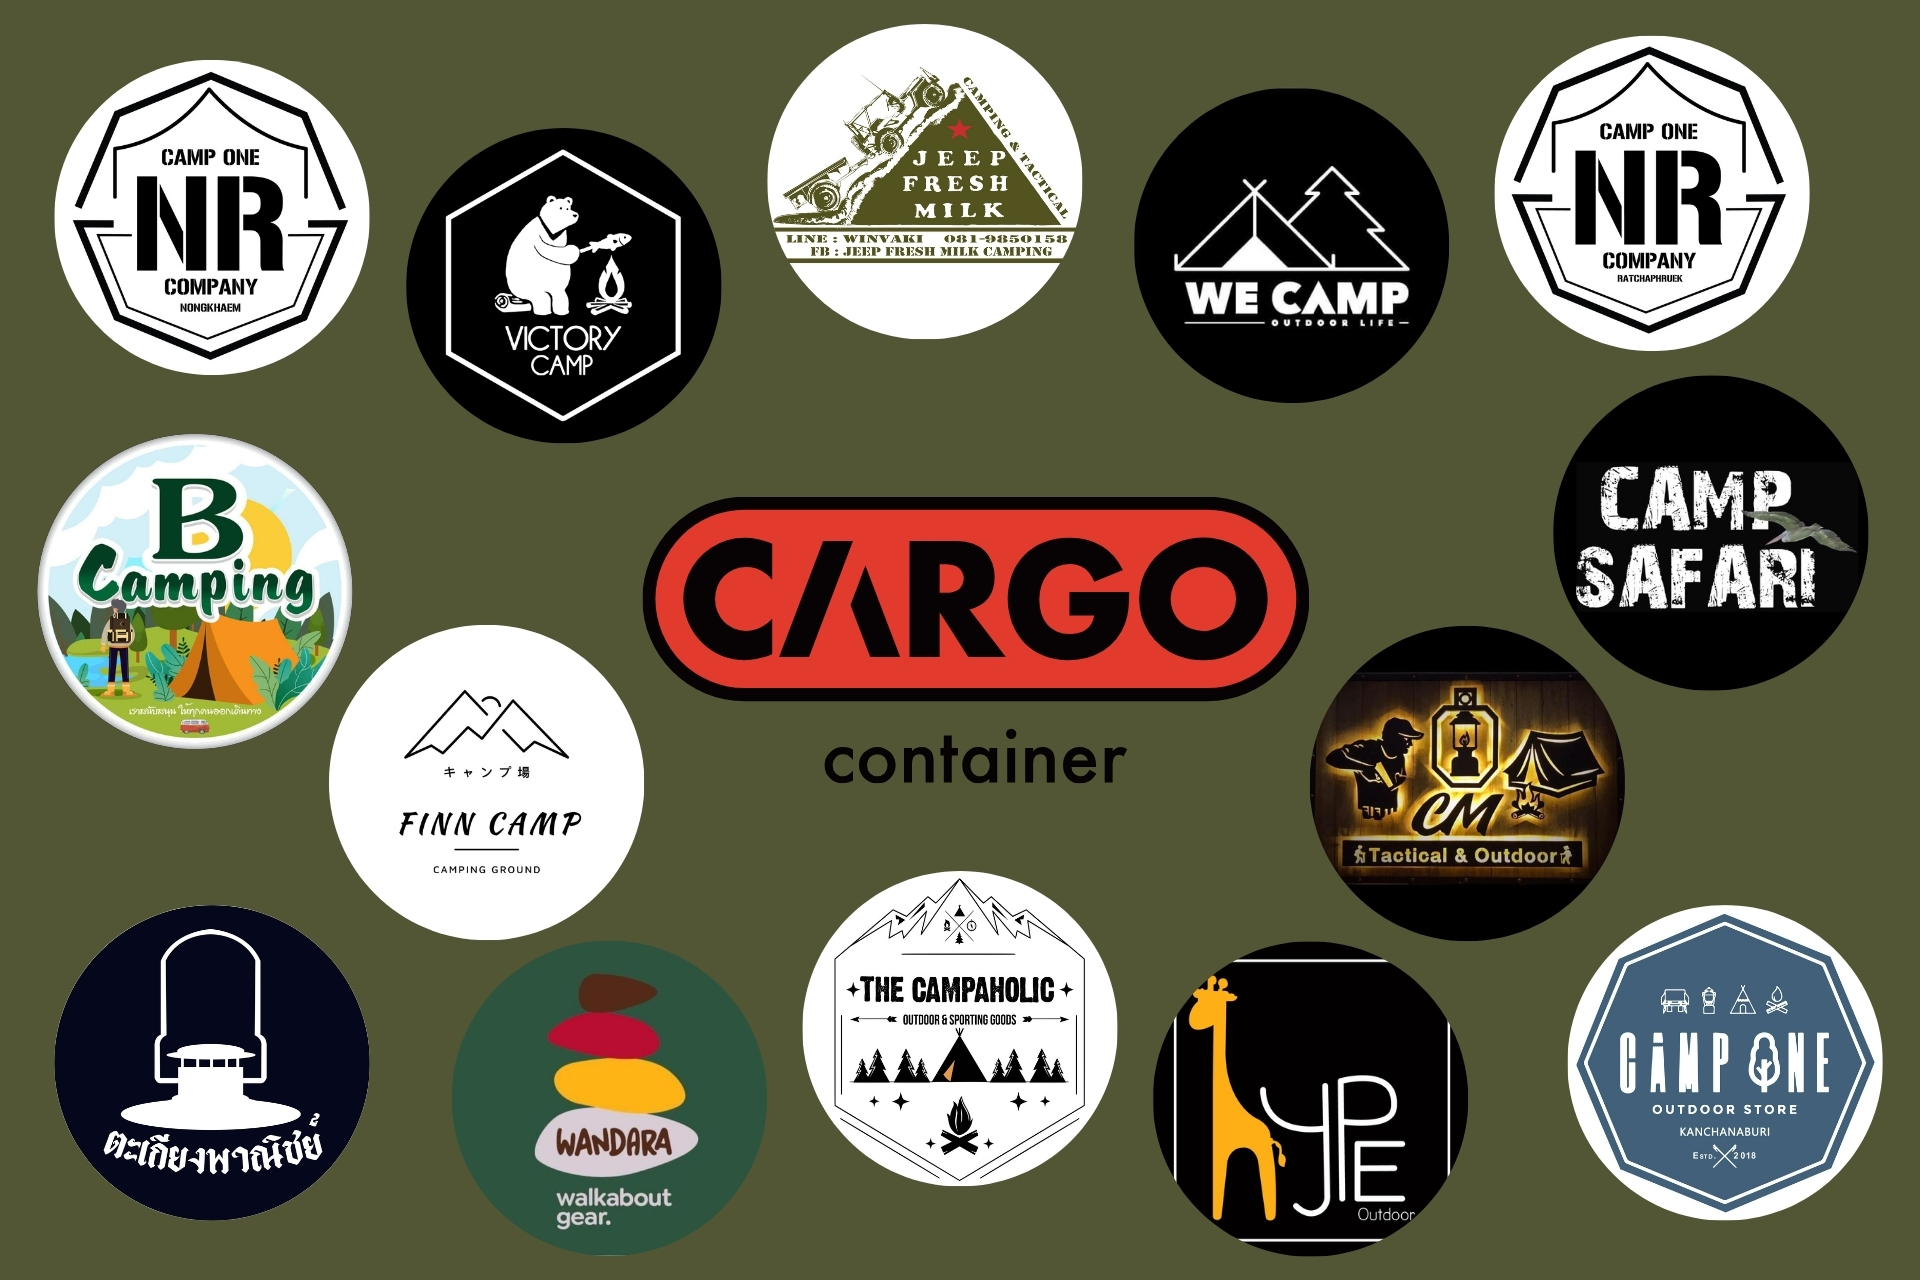 ซื้อ Cargo Container ที่ไหนได้บ้าง?